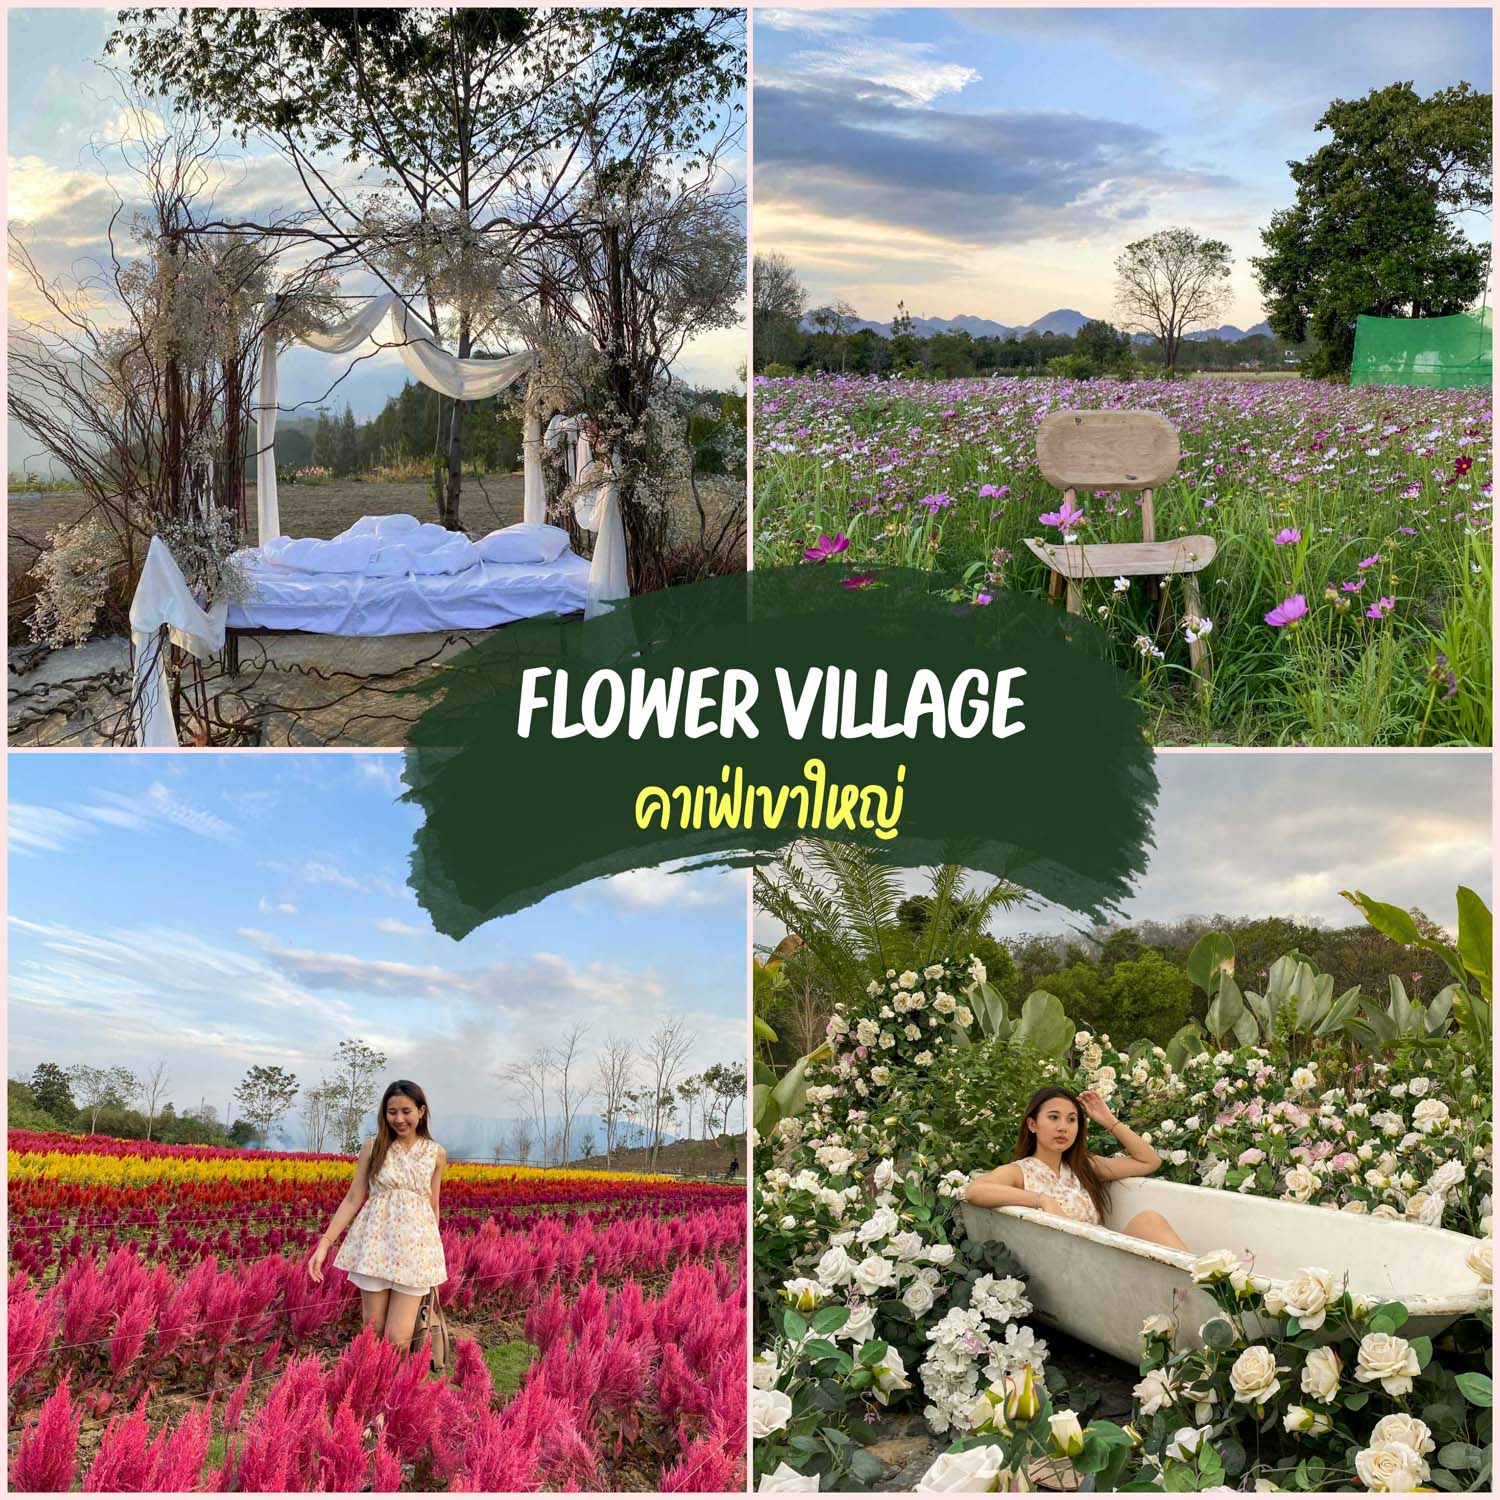 Flower village คาเฟ่เขาใหญ่ ที่เที่ยวเขาใหญ่ ที่นี่มีหลายโซนมากๆ ทั้งโซนดอกกุหลาบ ทุ่งดอกสร้อยไก่ ทุ่งดอกคอสมอส ทุ่งดอกดาวเรือง และอีกมากมาย